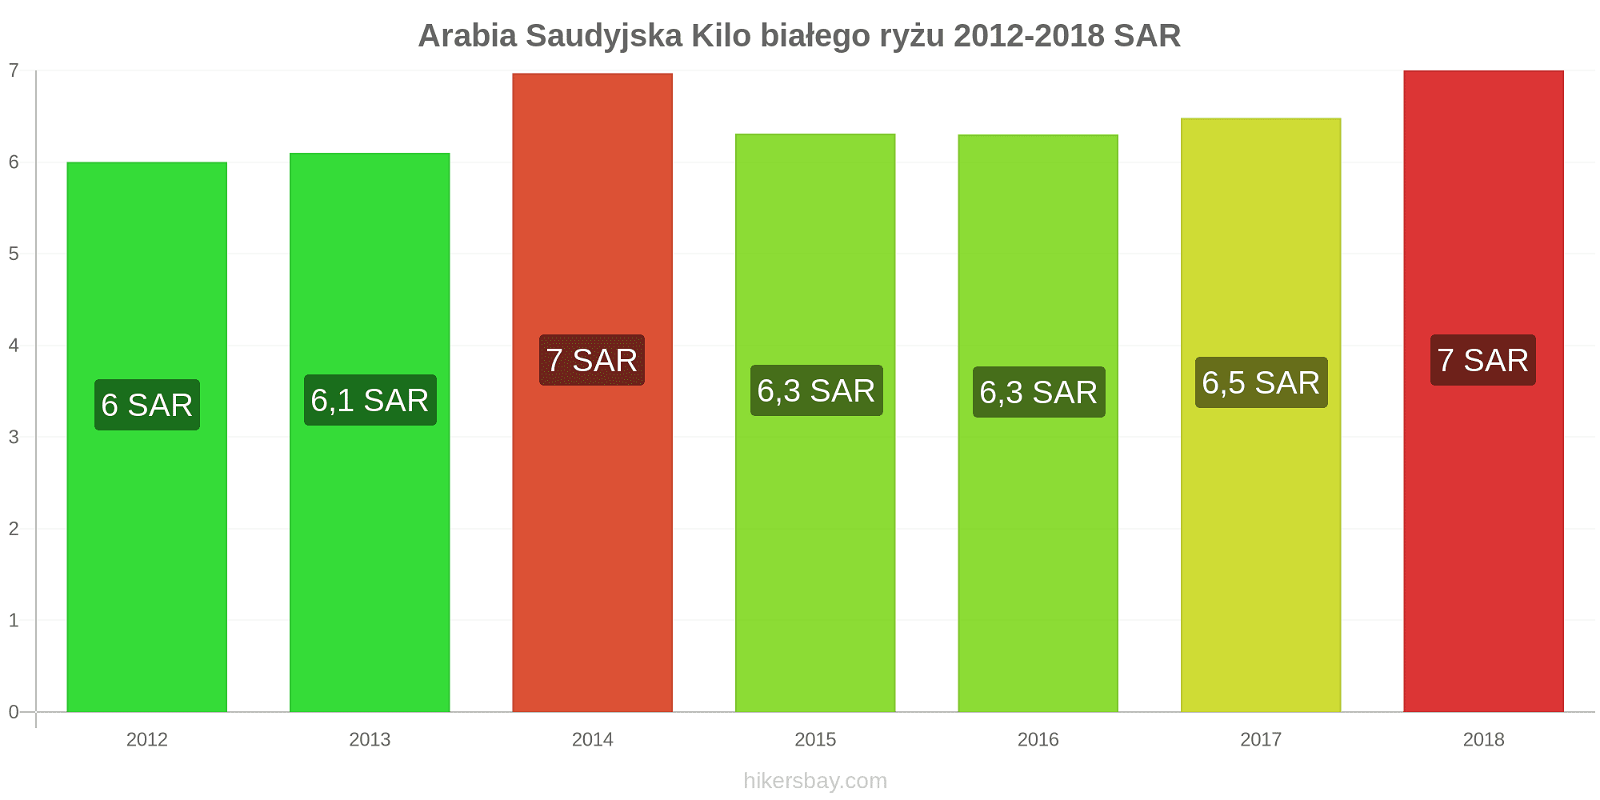 Arabia Saudyjska zmiany cen Kilo białego ryżu hikersbay.com